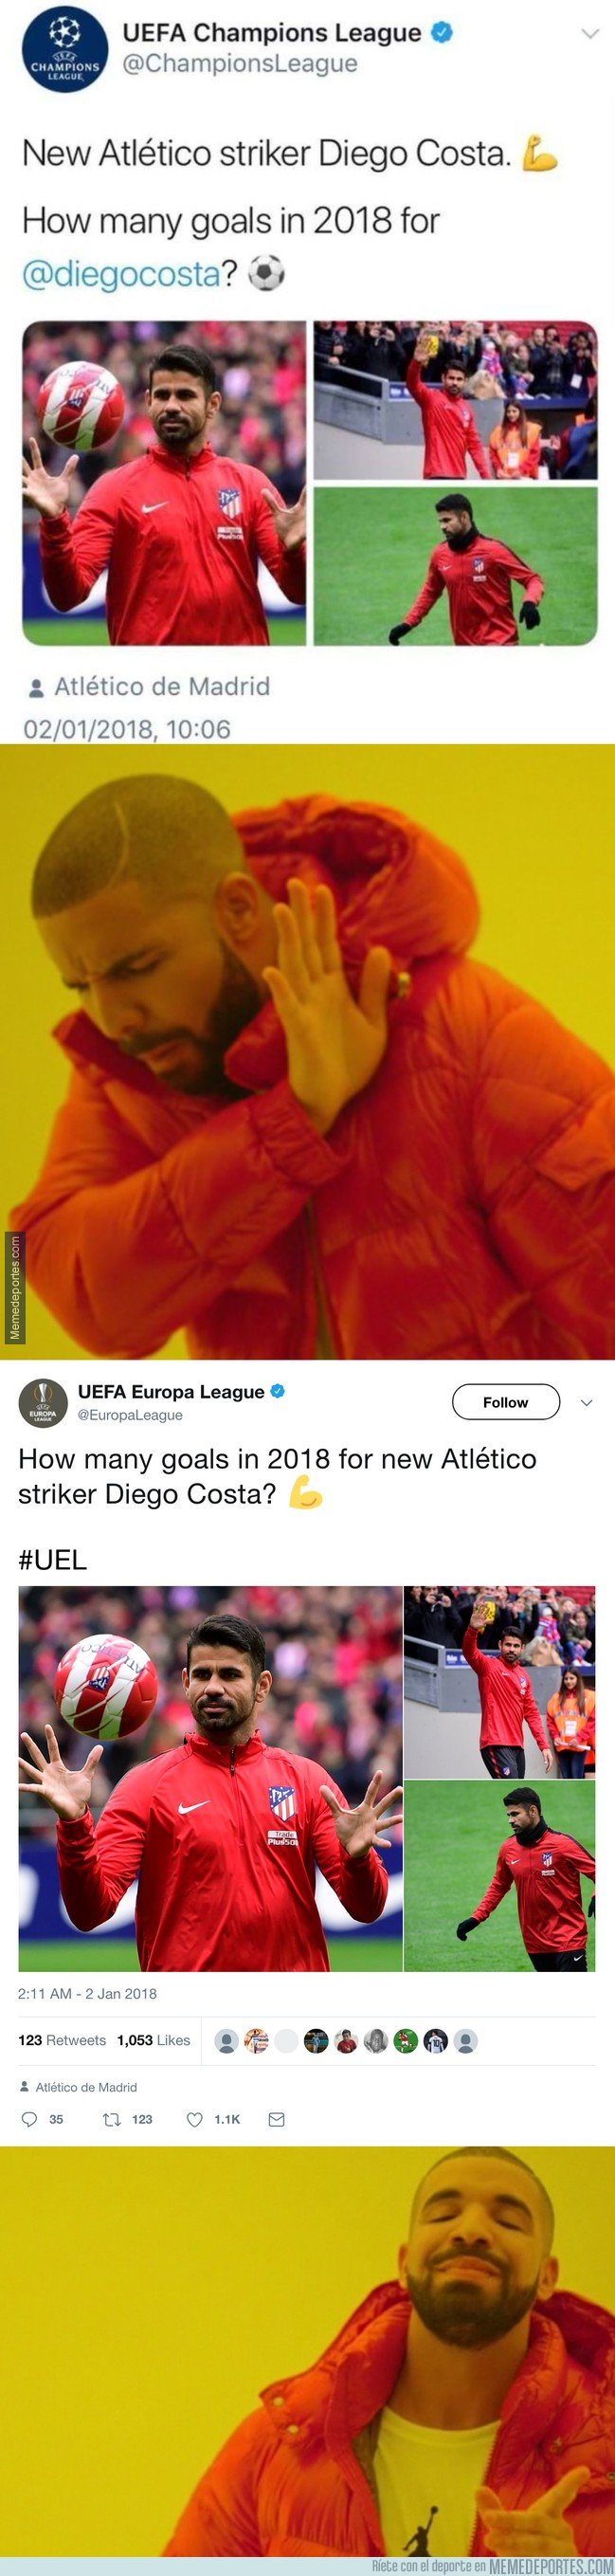 1014740 - La UEFA mete la pata hasta el fondo con este tweet sobre Diego Costa en la Champions, y lo tiene que borrar rápido